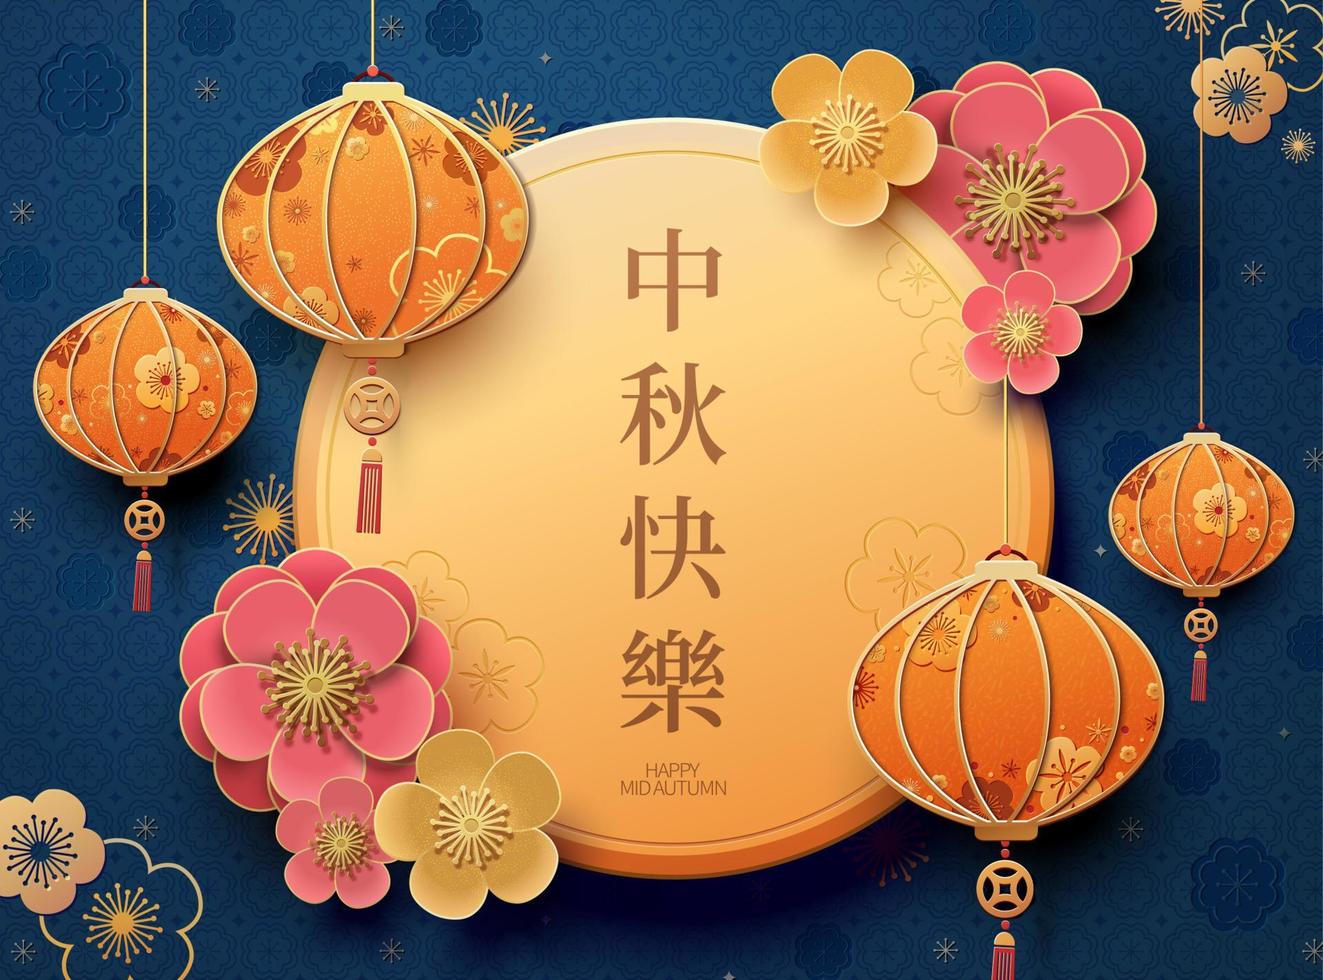 contento medio autunno Festival con sospeso lanterne e fiori, vacanza nome scritto nel Cinese parole vettore